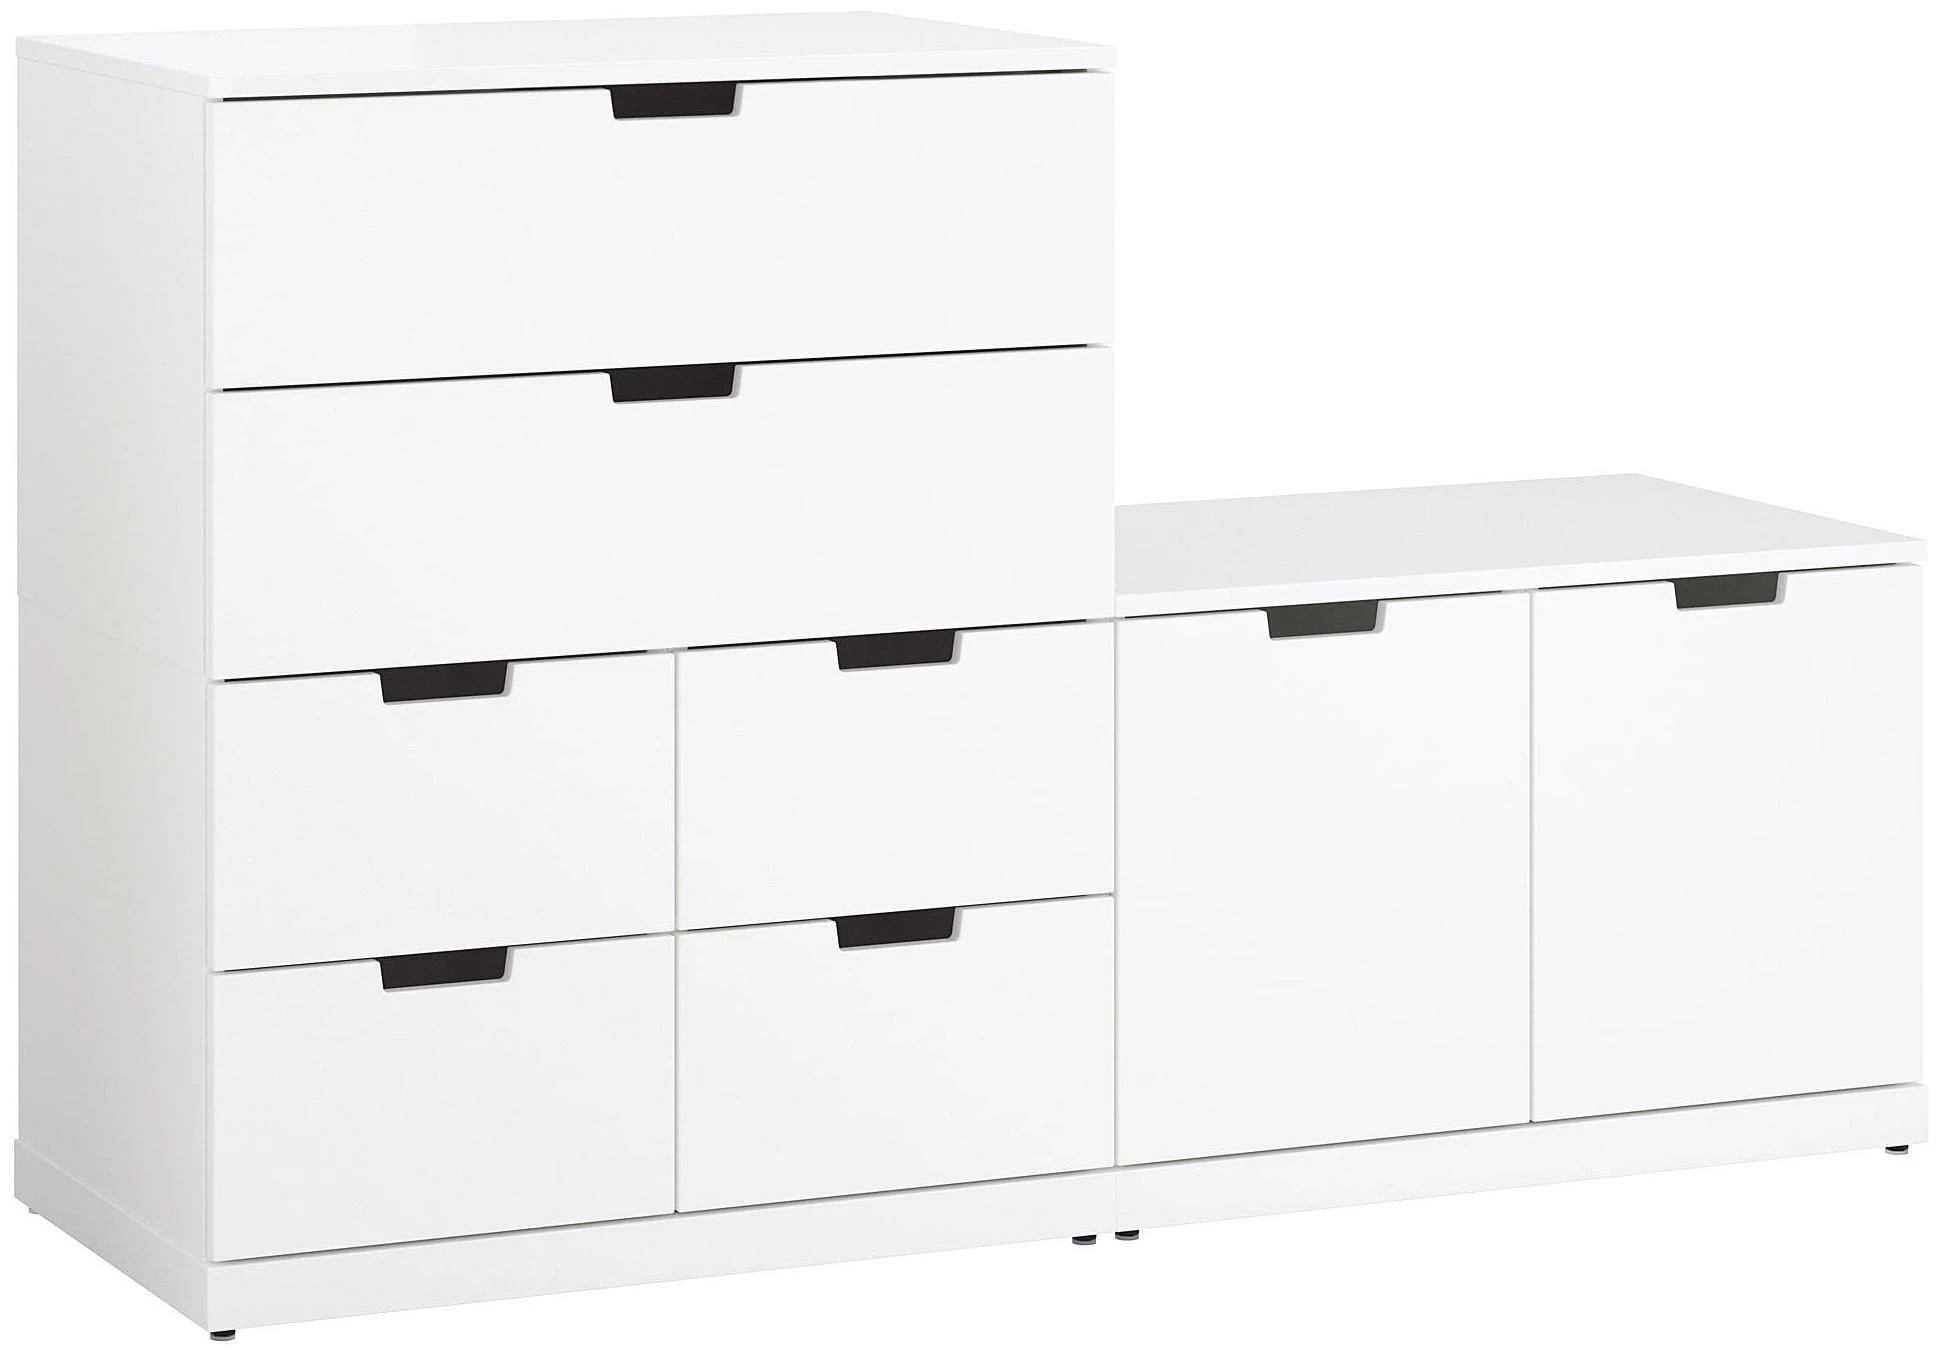 Комод с 8 ящиками - аналог IKEA  NORDLI, 90x120 см, белый